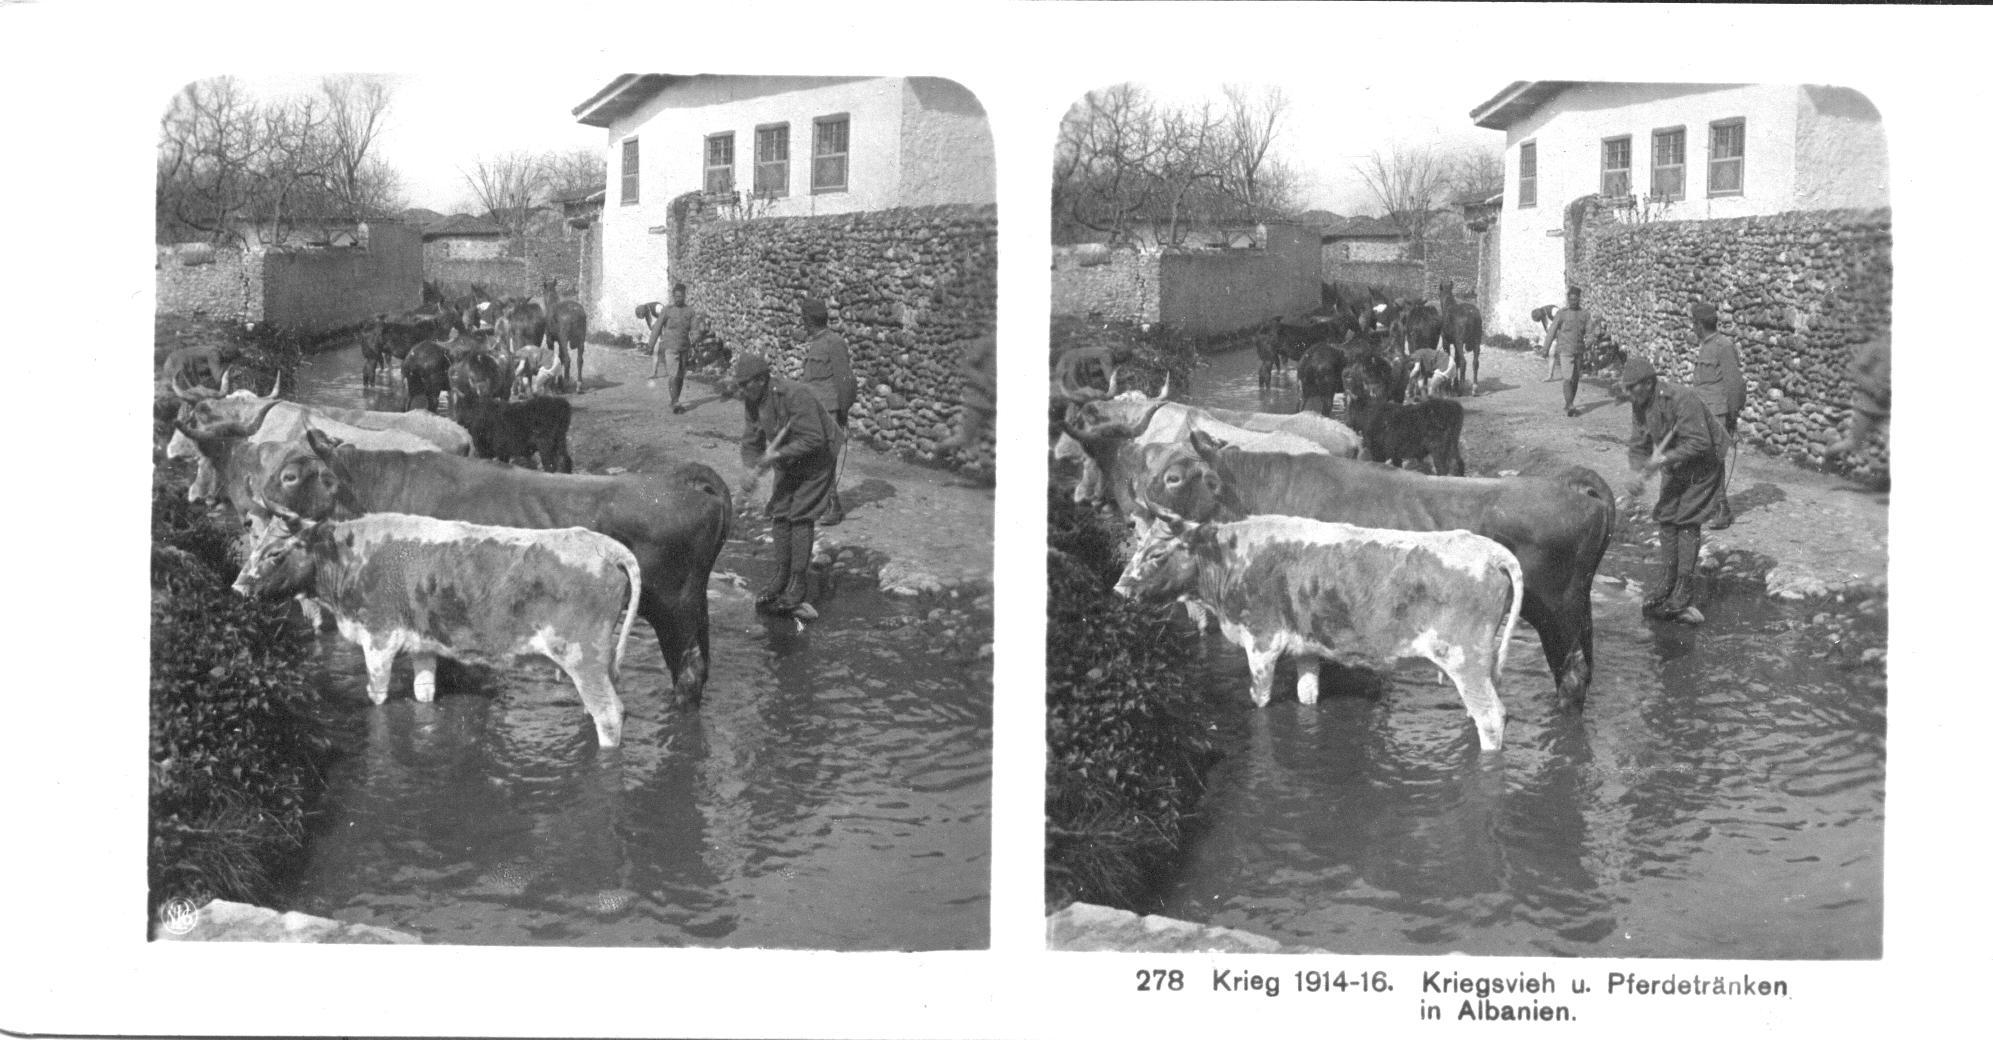 "Kriegsvieh und Pferdetränken in Albanien" - War cattle and horse drinks in Albania